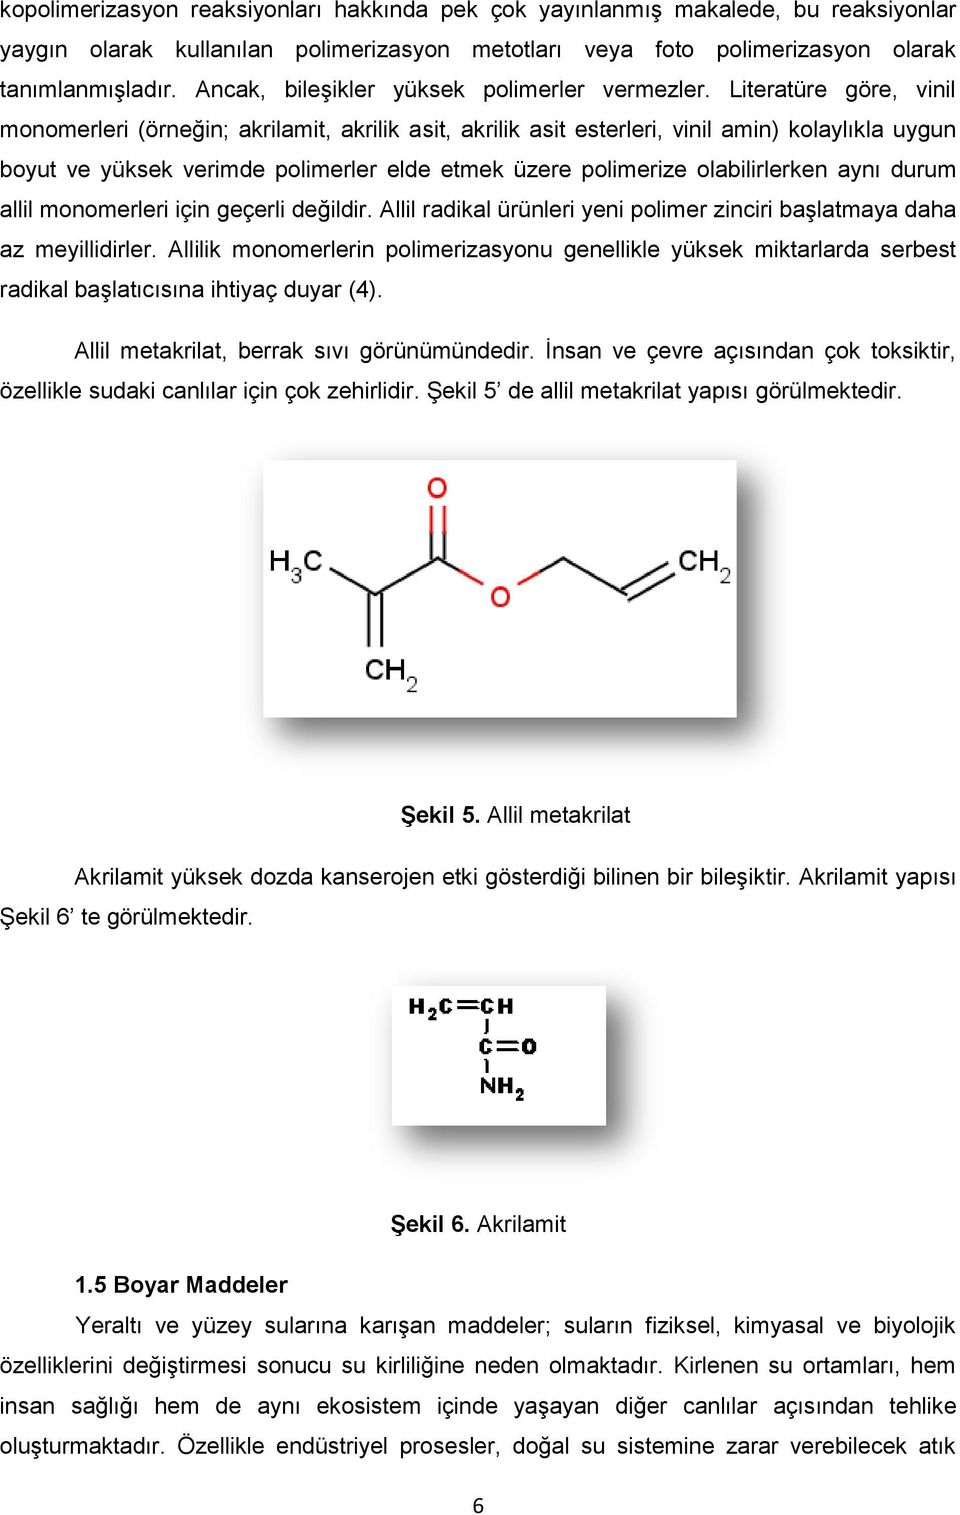 Literatüre göre, vinil monomerleri (örneğin; akrilamit, akrilik asit, akrilik asit esterleri, vinil amin) kolaylıkla uygun boyut ve yüksek verimde polimerler elde etmek üzere polimerize